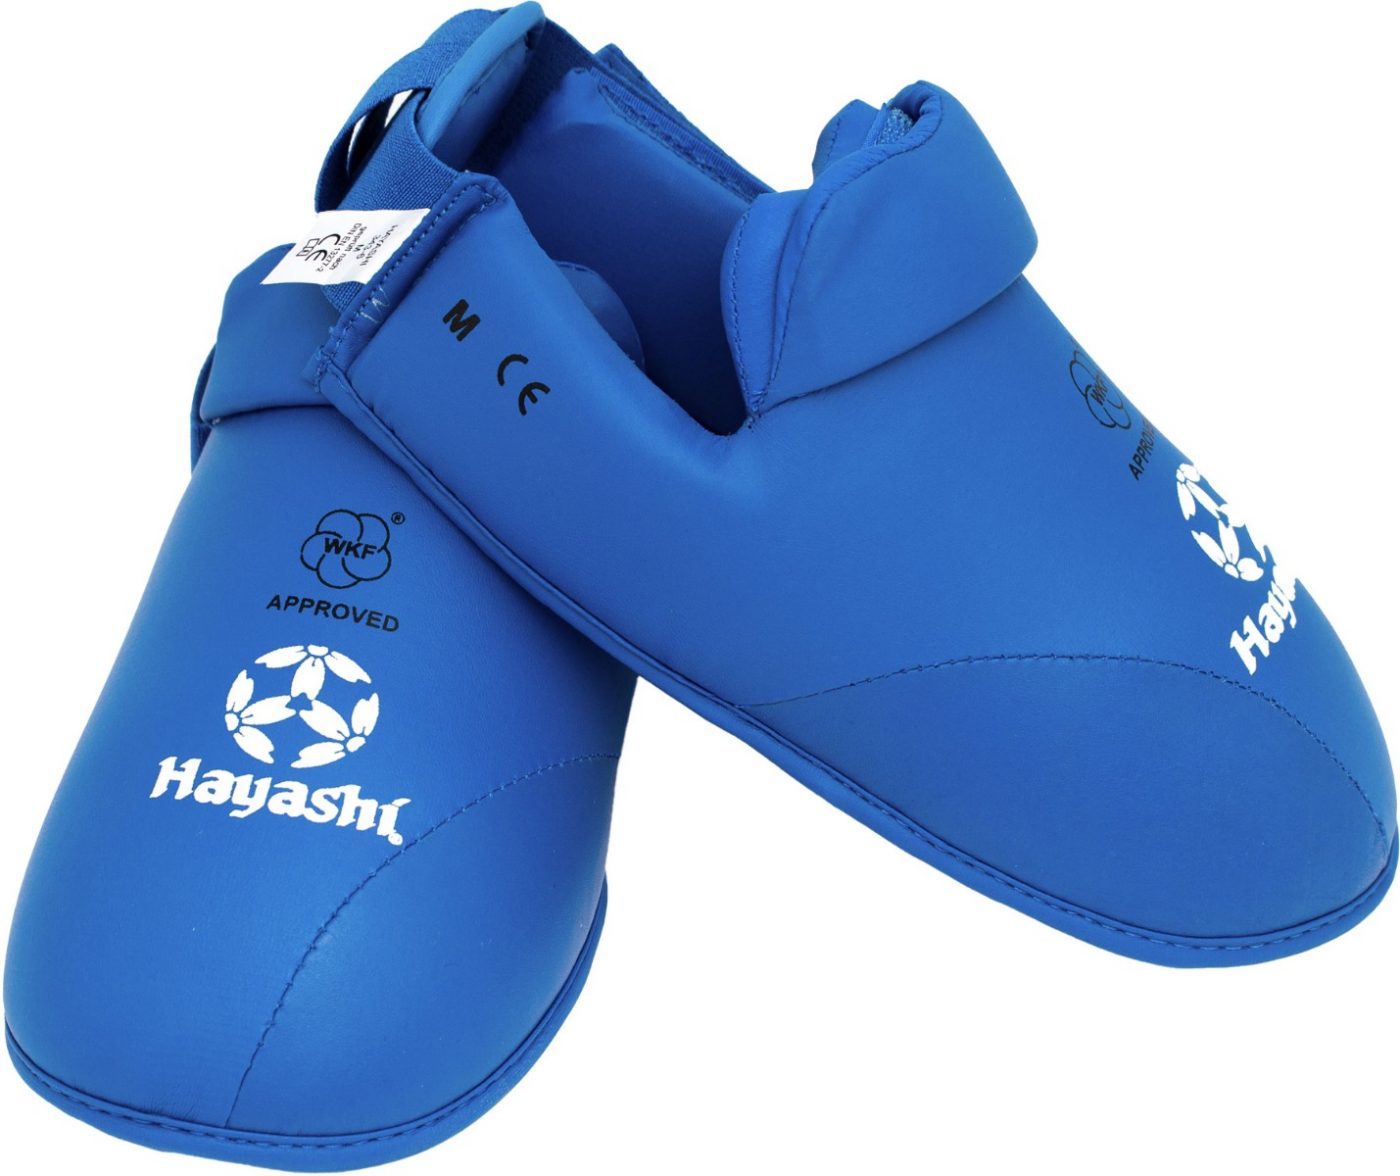 Hayashi Karate voetbeschermers (WKF approved) Blauw